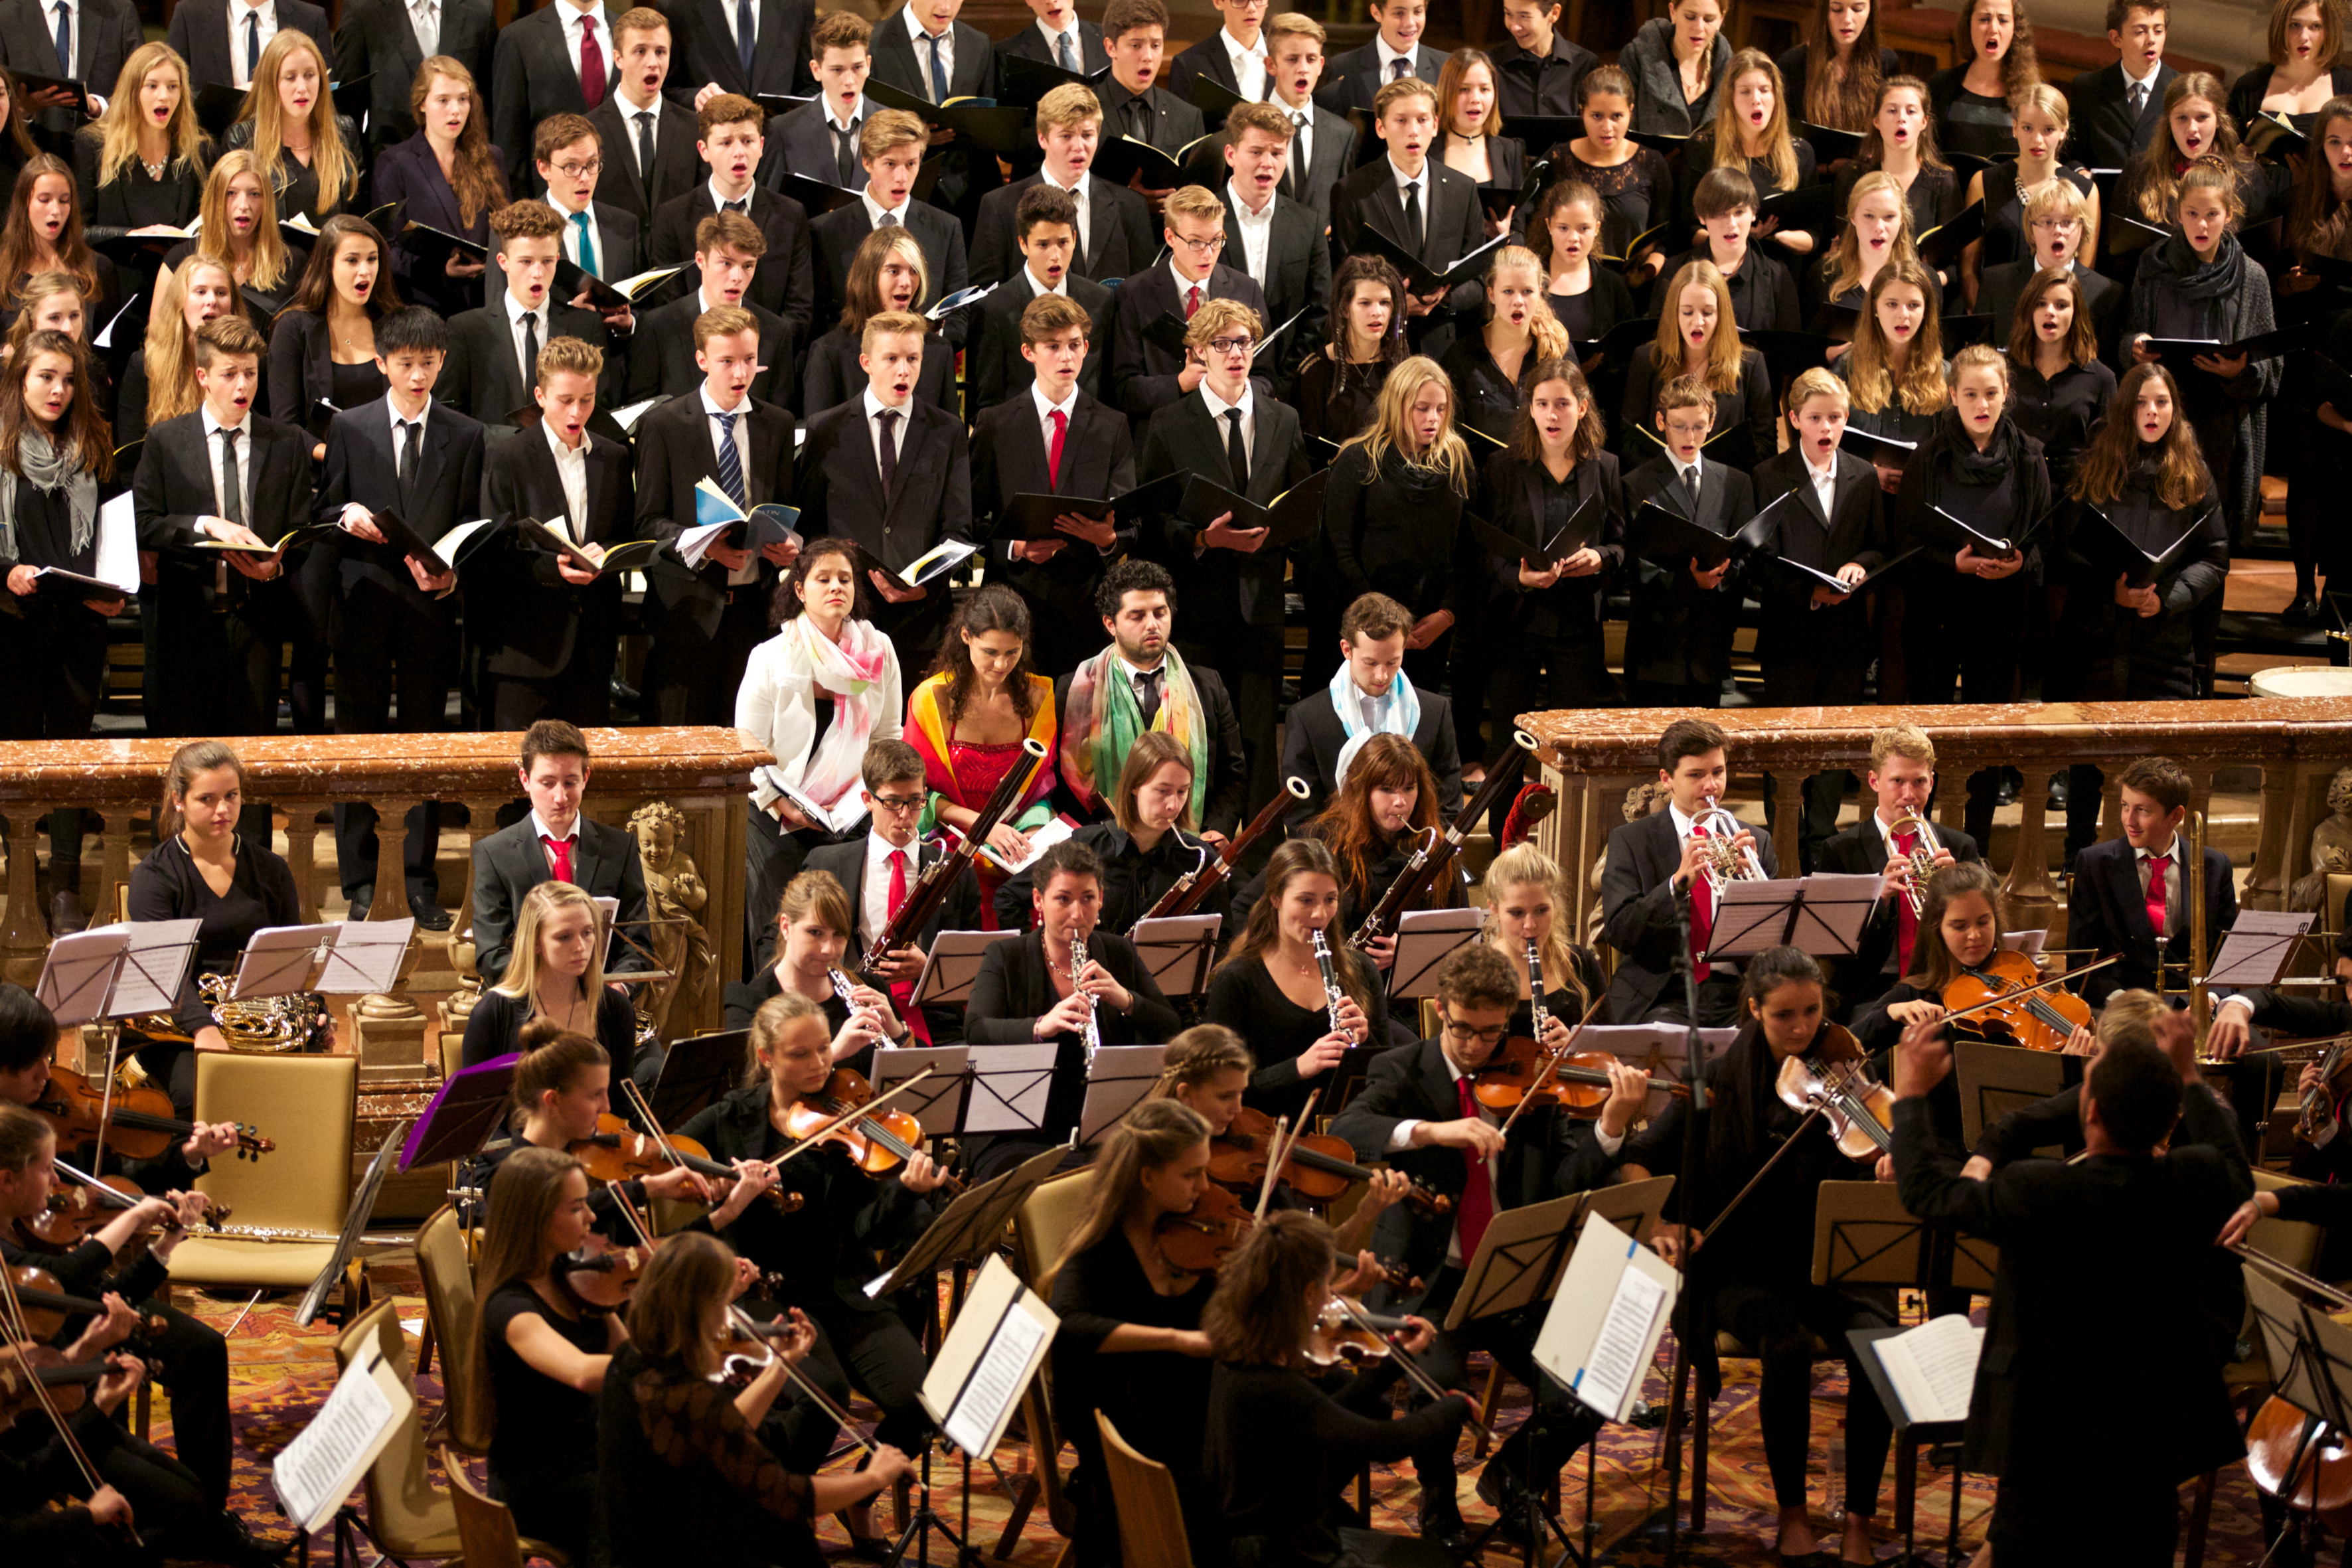 Pre-Opening und Präsentation von Opera Concert for Peace im Erzbischöflichen Palais in Salzburg am 29.05.2015